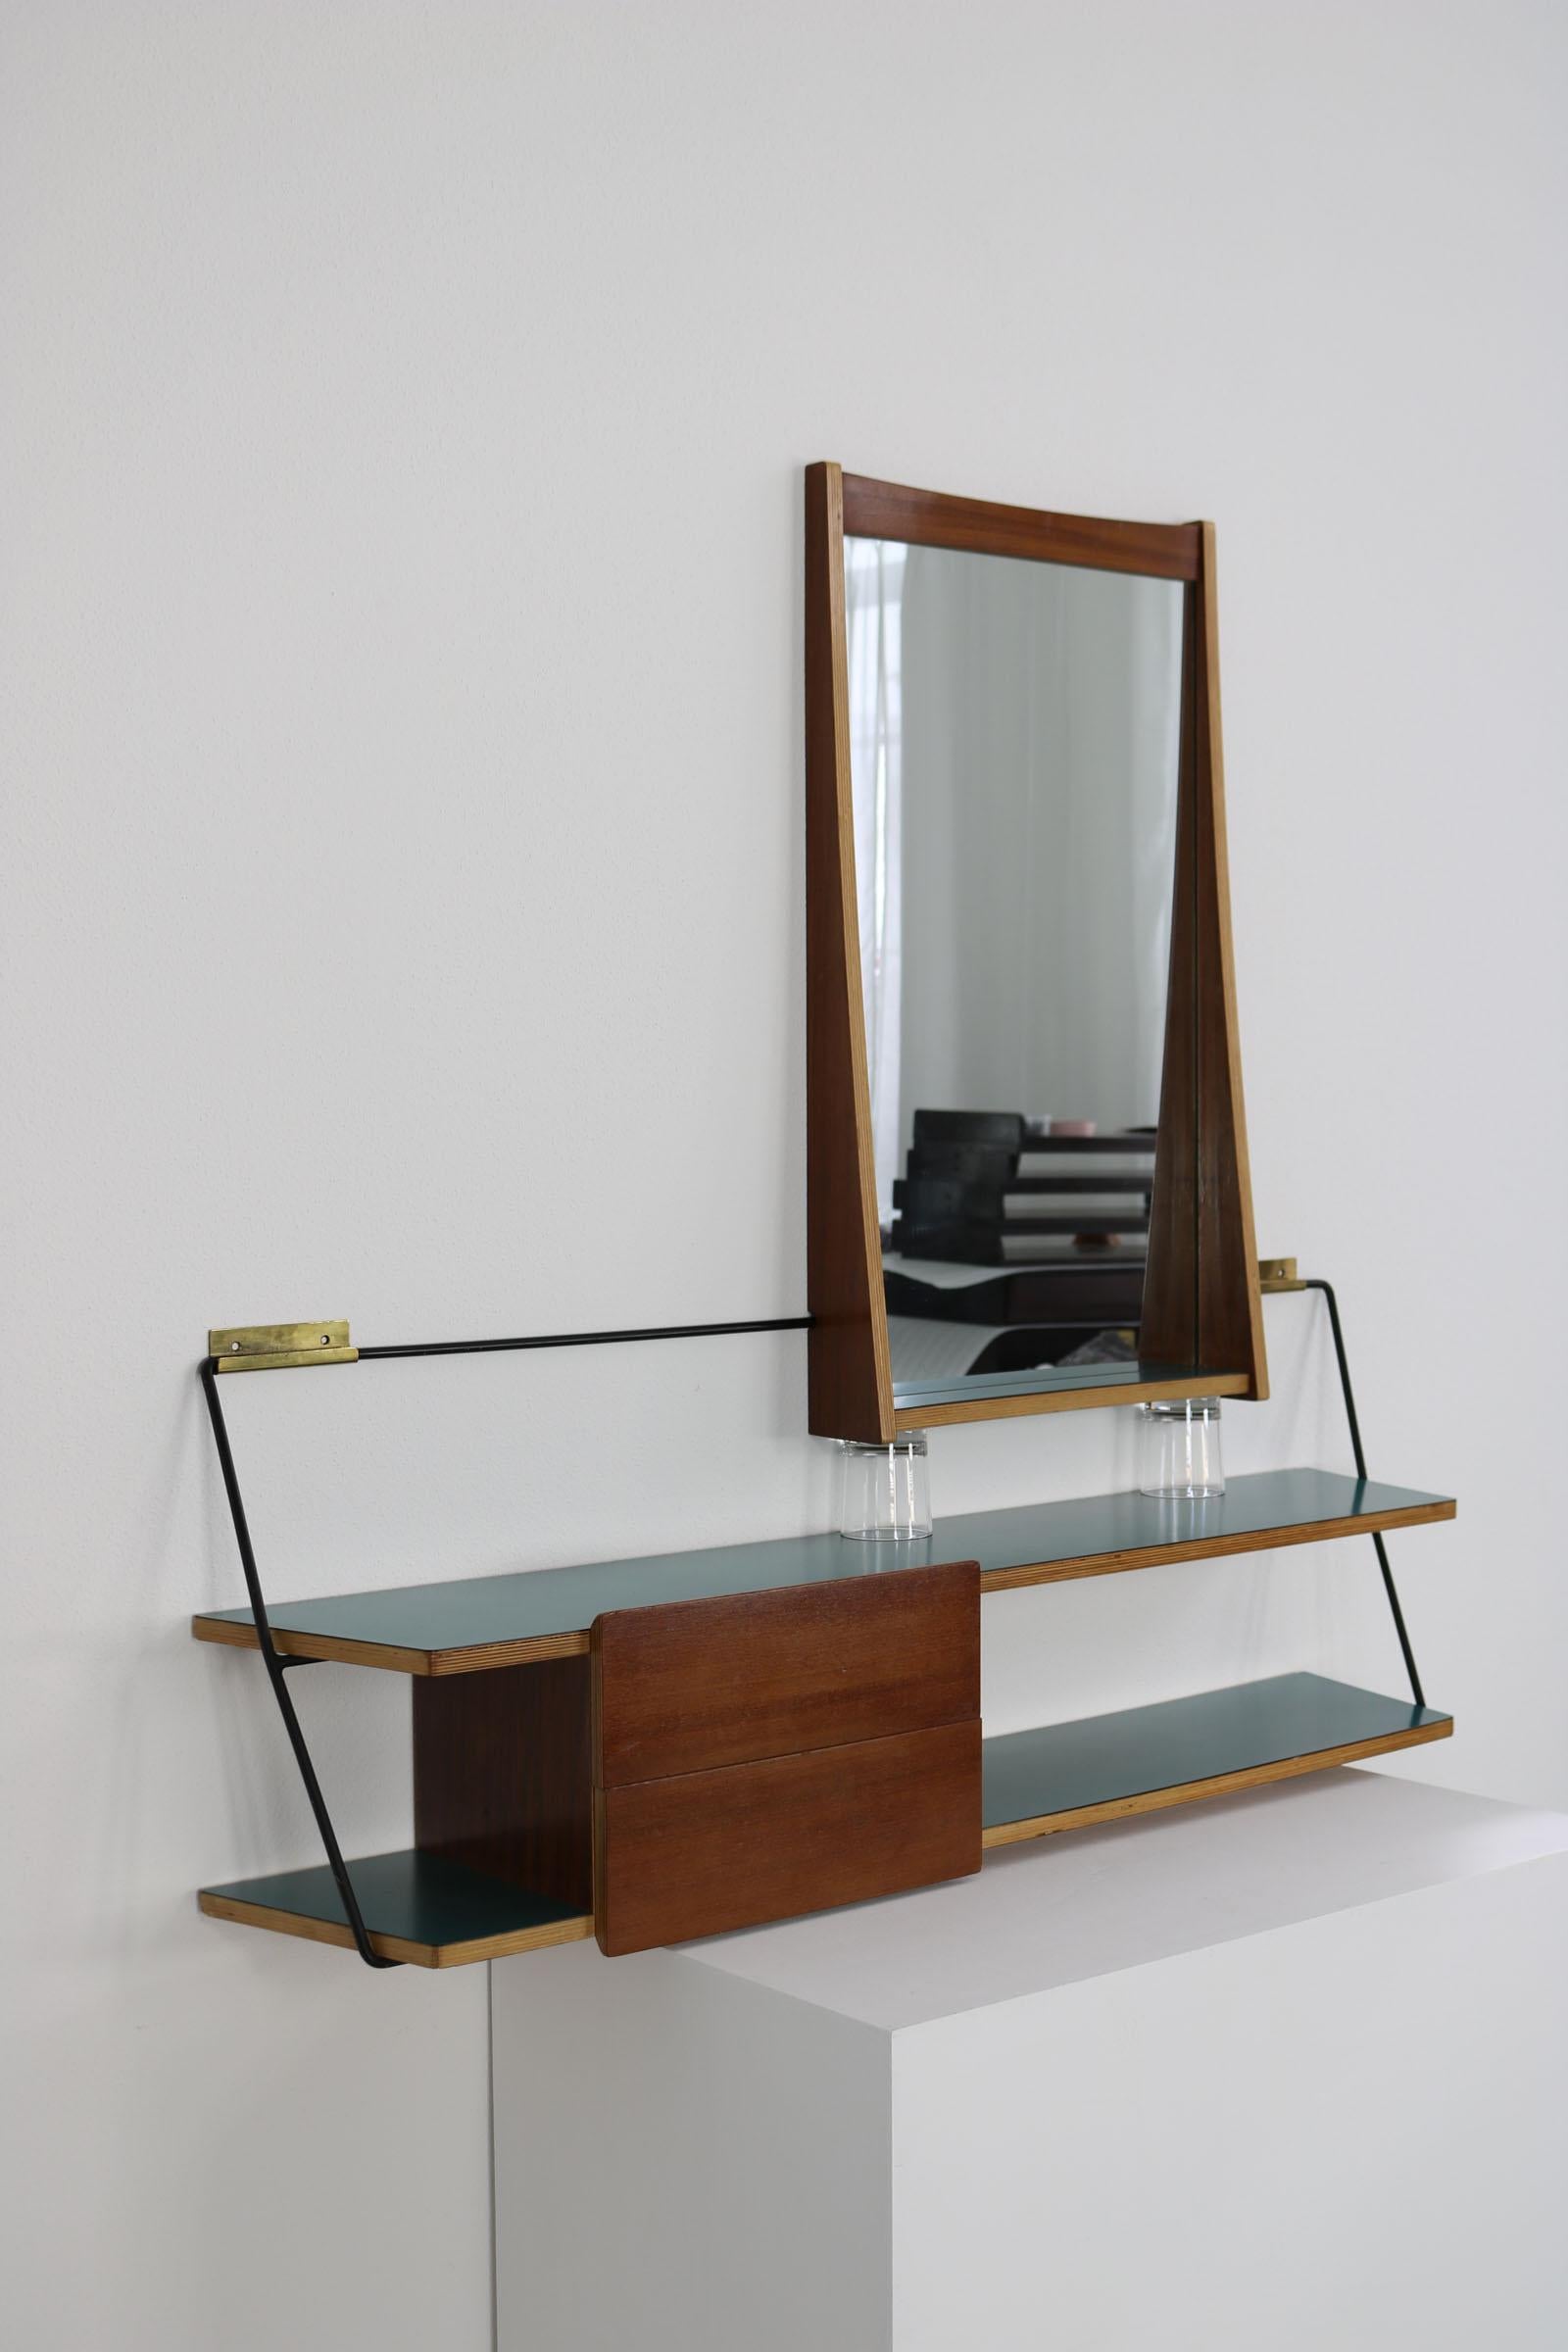 Dieses italienische Set, bestehend aus einem Spiegel und einer Konsole, stammt aus den 1950er Jahren und wurde von Eugenia Alberti Reggio entworfen. Der rechteckige Spiegel wird von Teakholz umrahmt. Die Konsole ist ebenfalls aus Teakholz gefertigt,